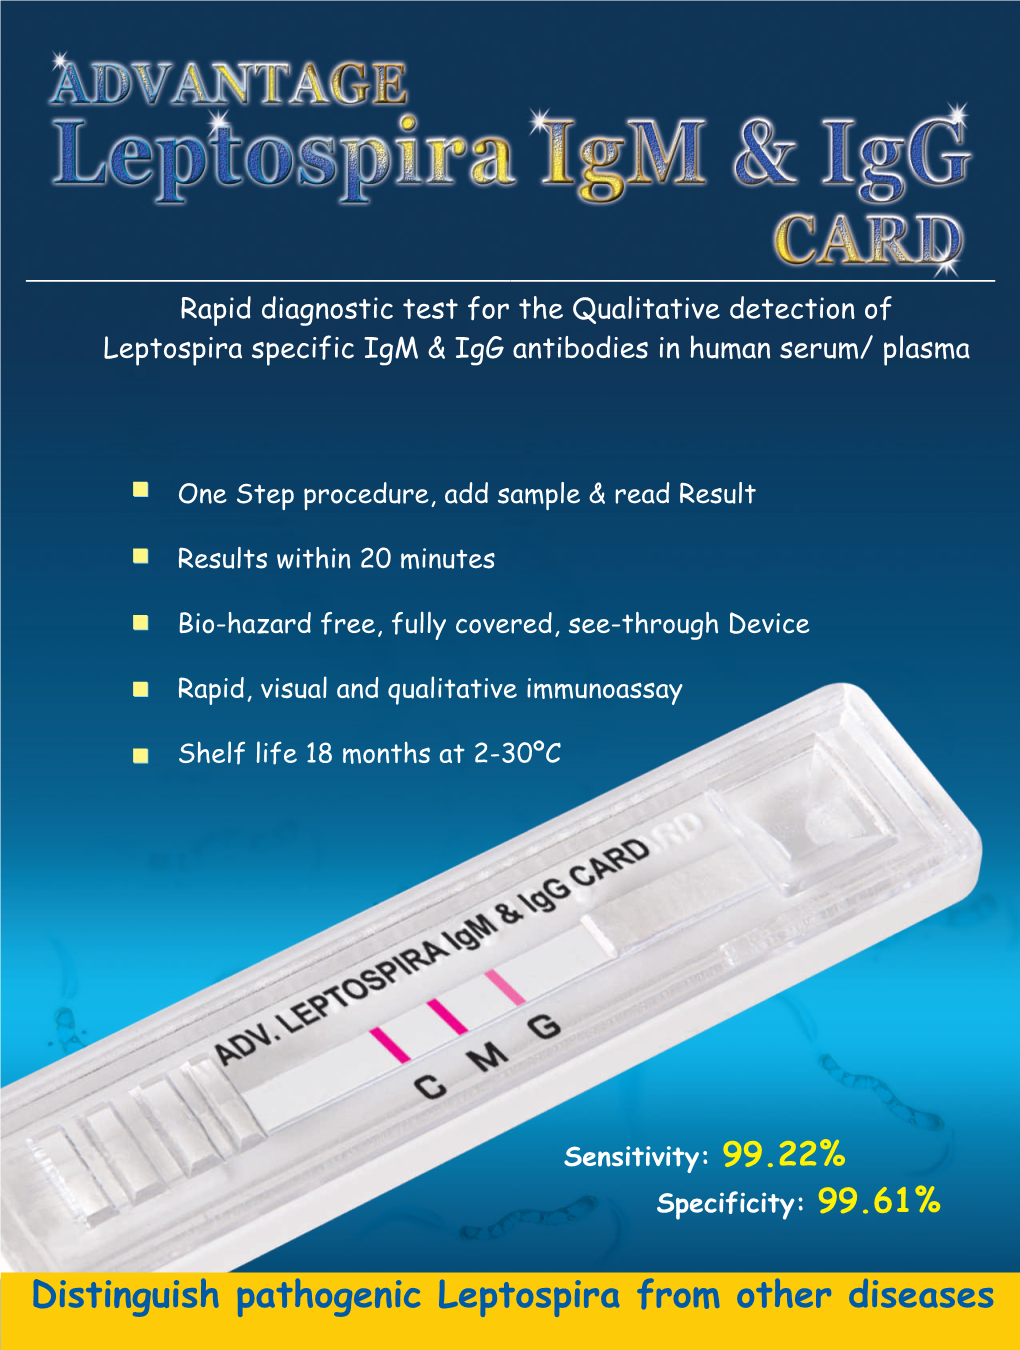 ADVANTAGE LEPTOSPIRA Igm & Igg CARD